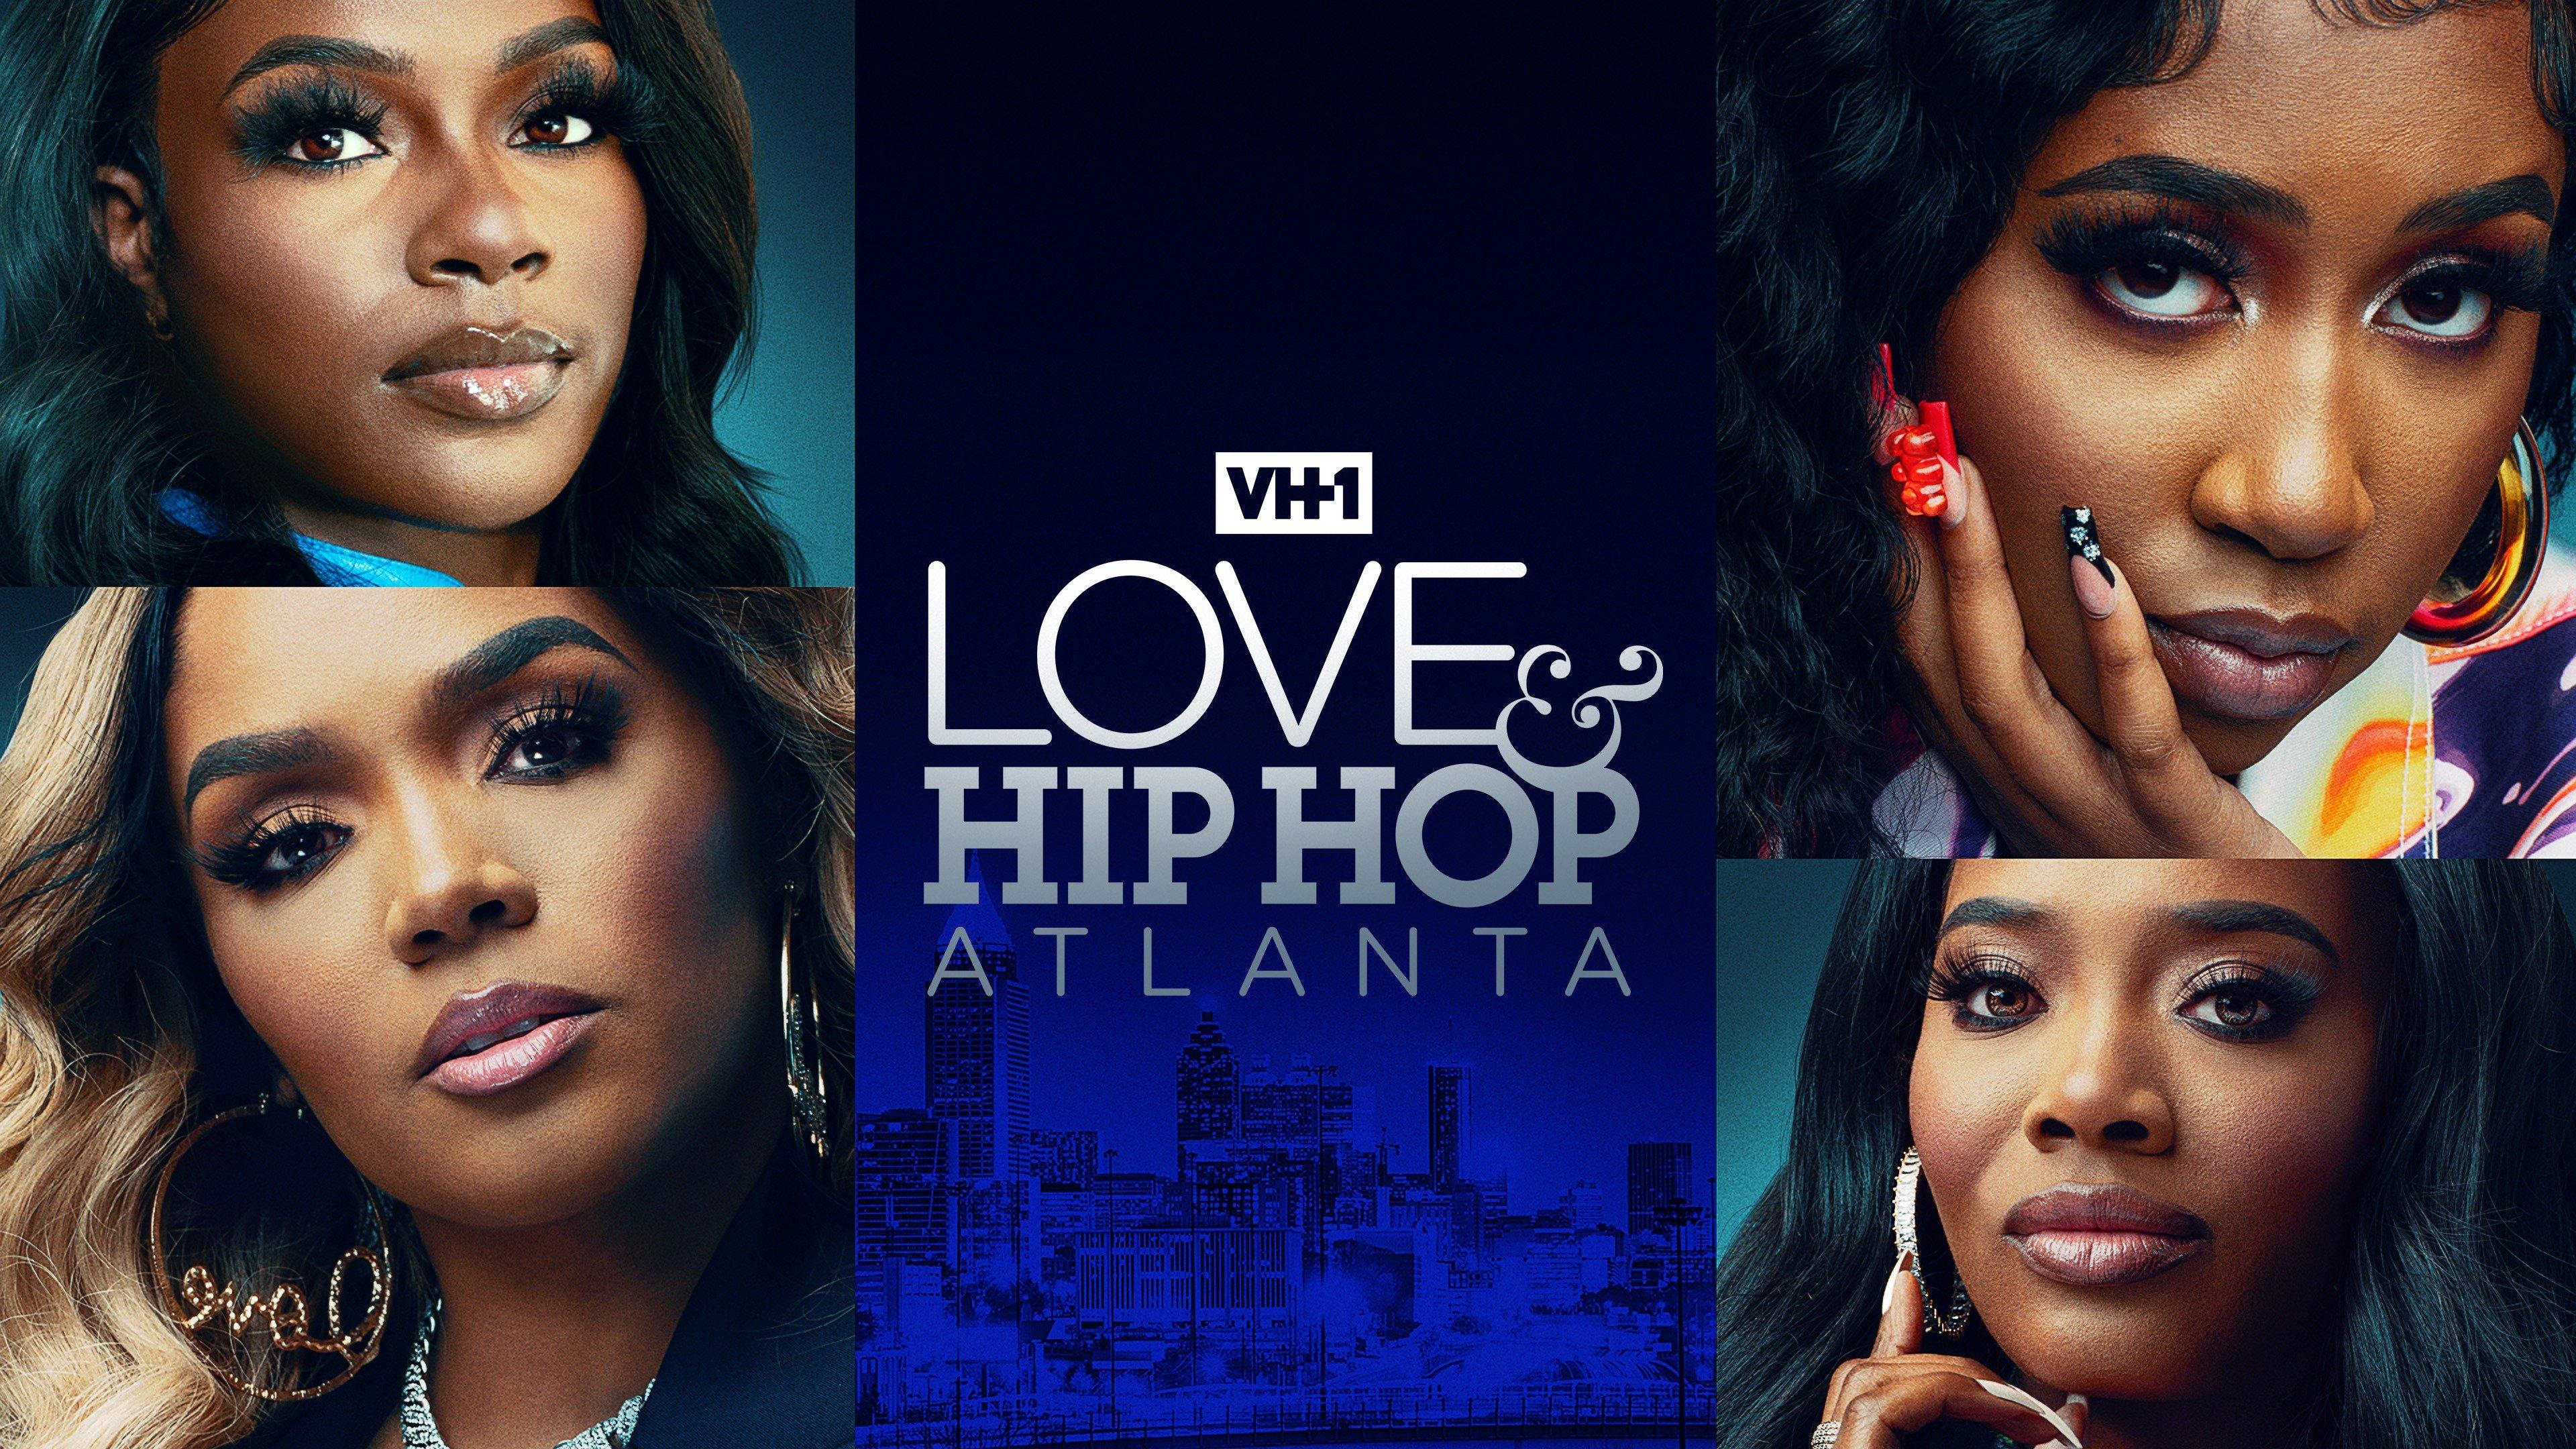 Watch Love & Hip Hop Atlanta VH1 Shows on Philo